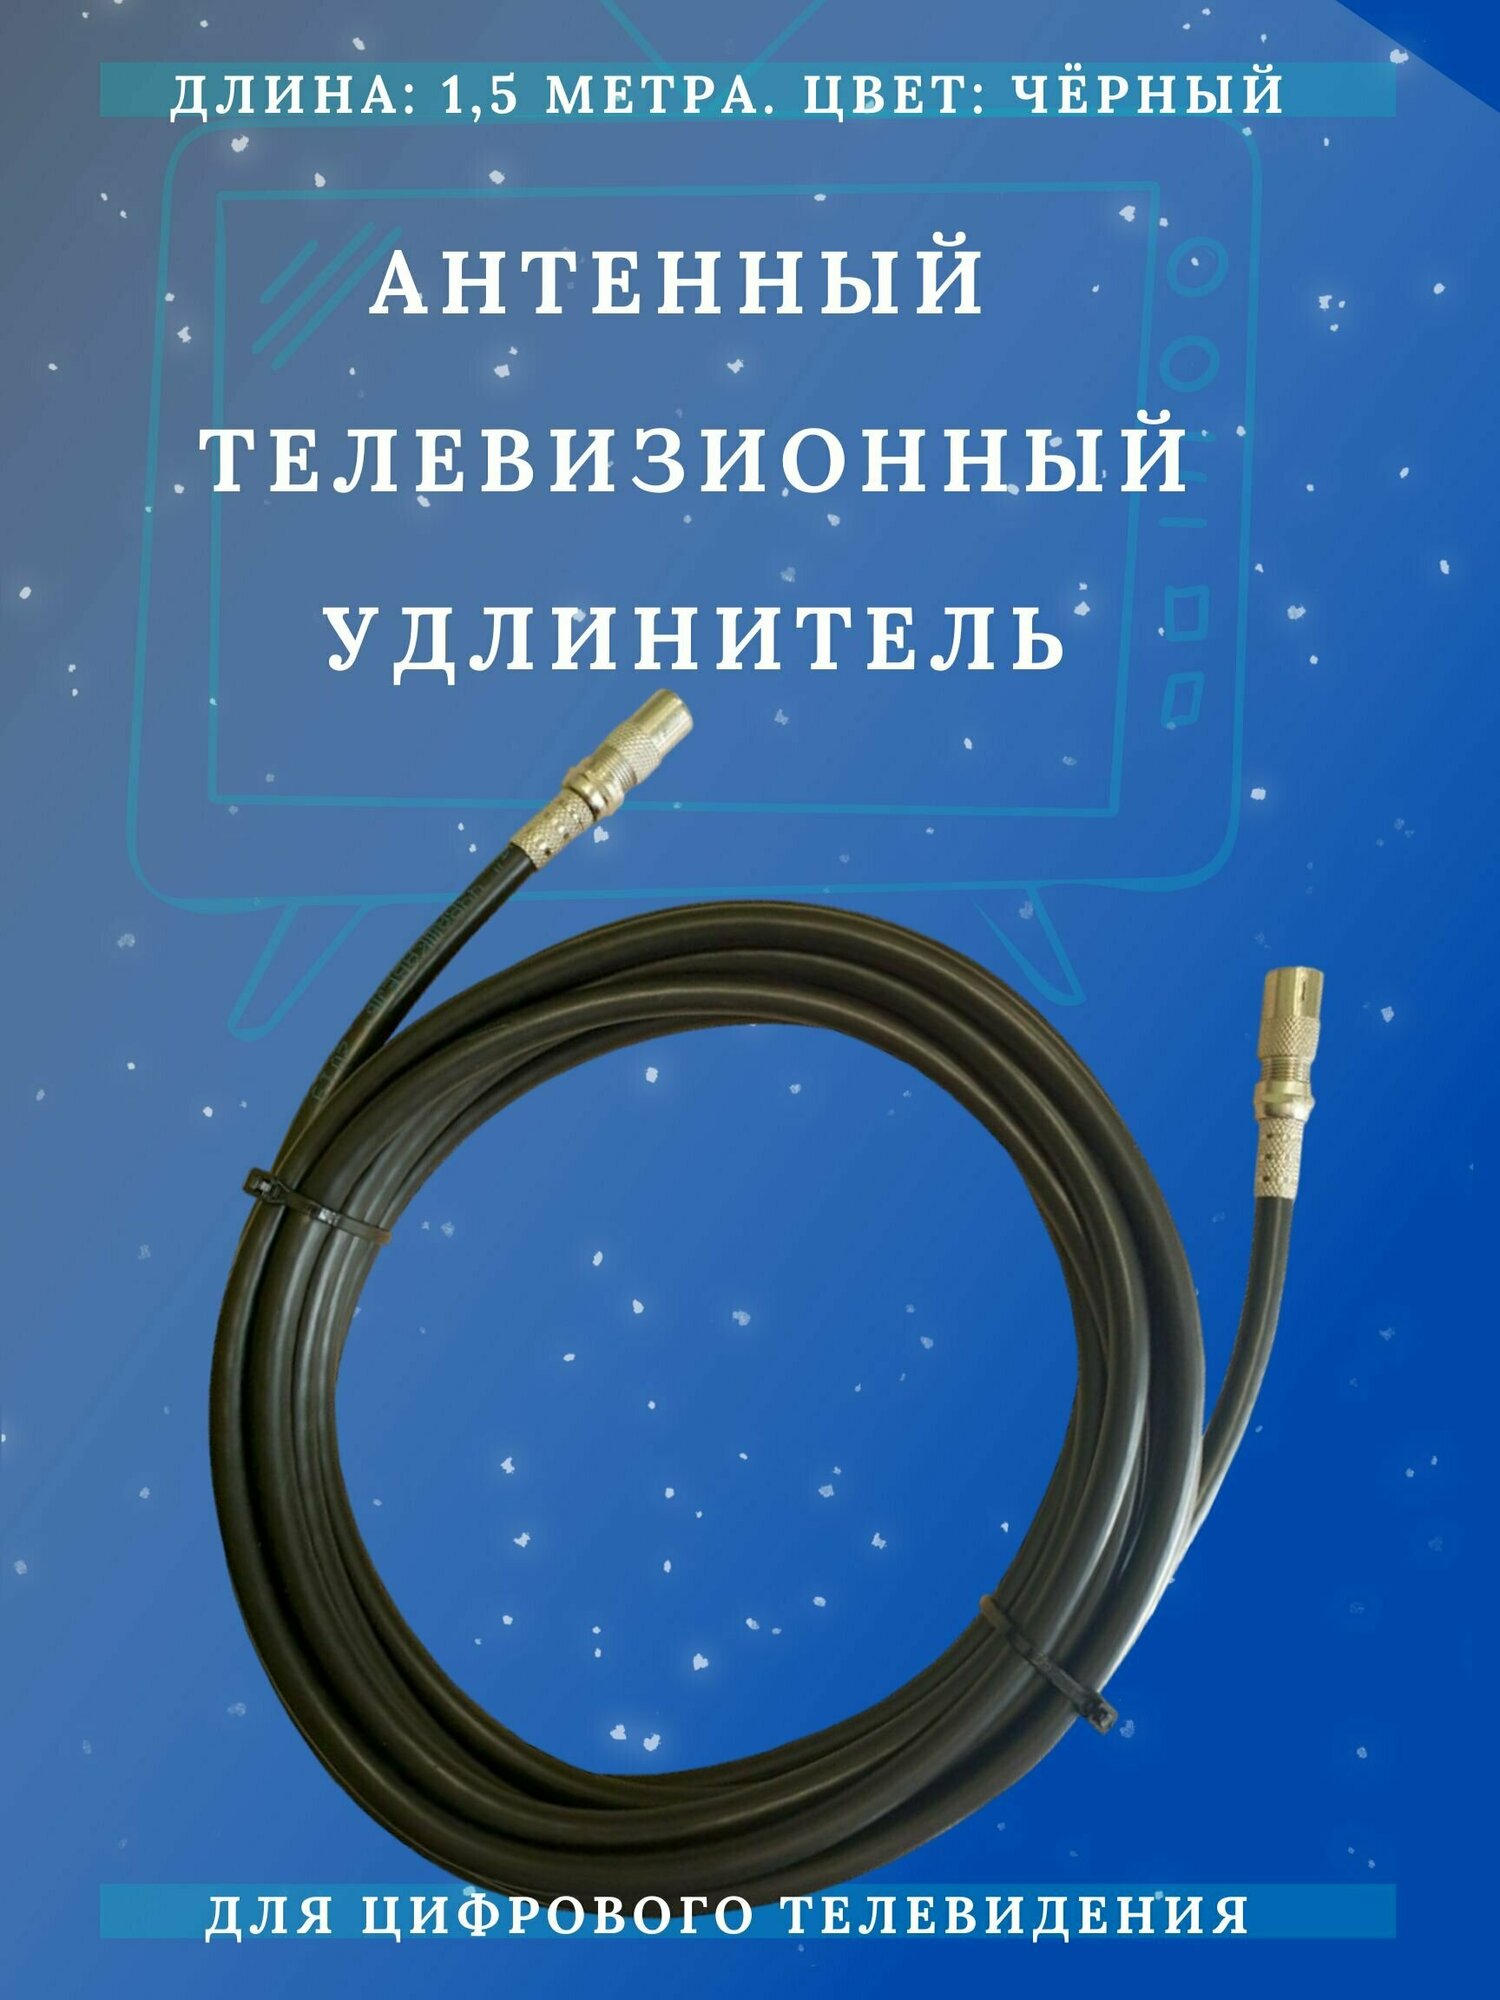 Антенный кабель телевизионный (удлинитель) ТАУ-1,5 метра Триада, чёрный